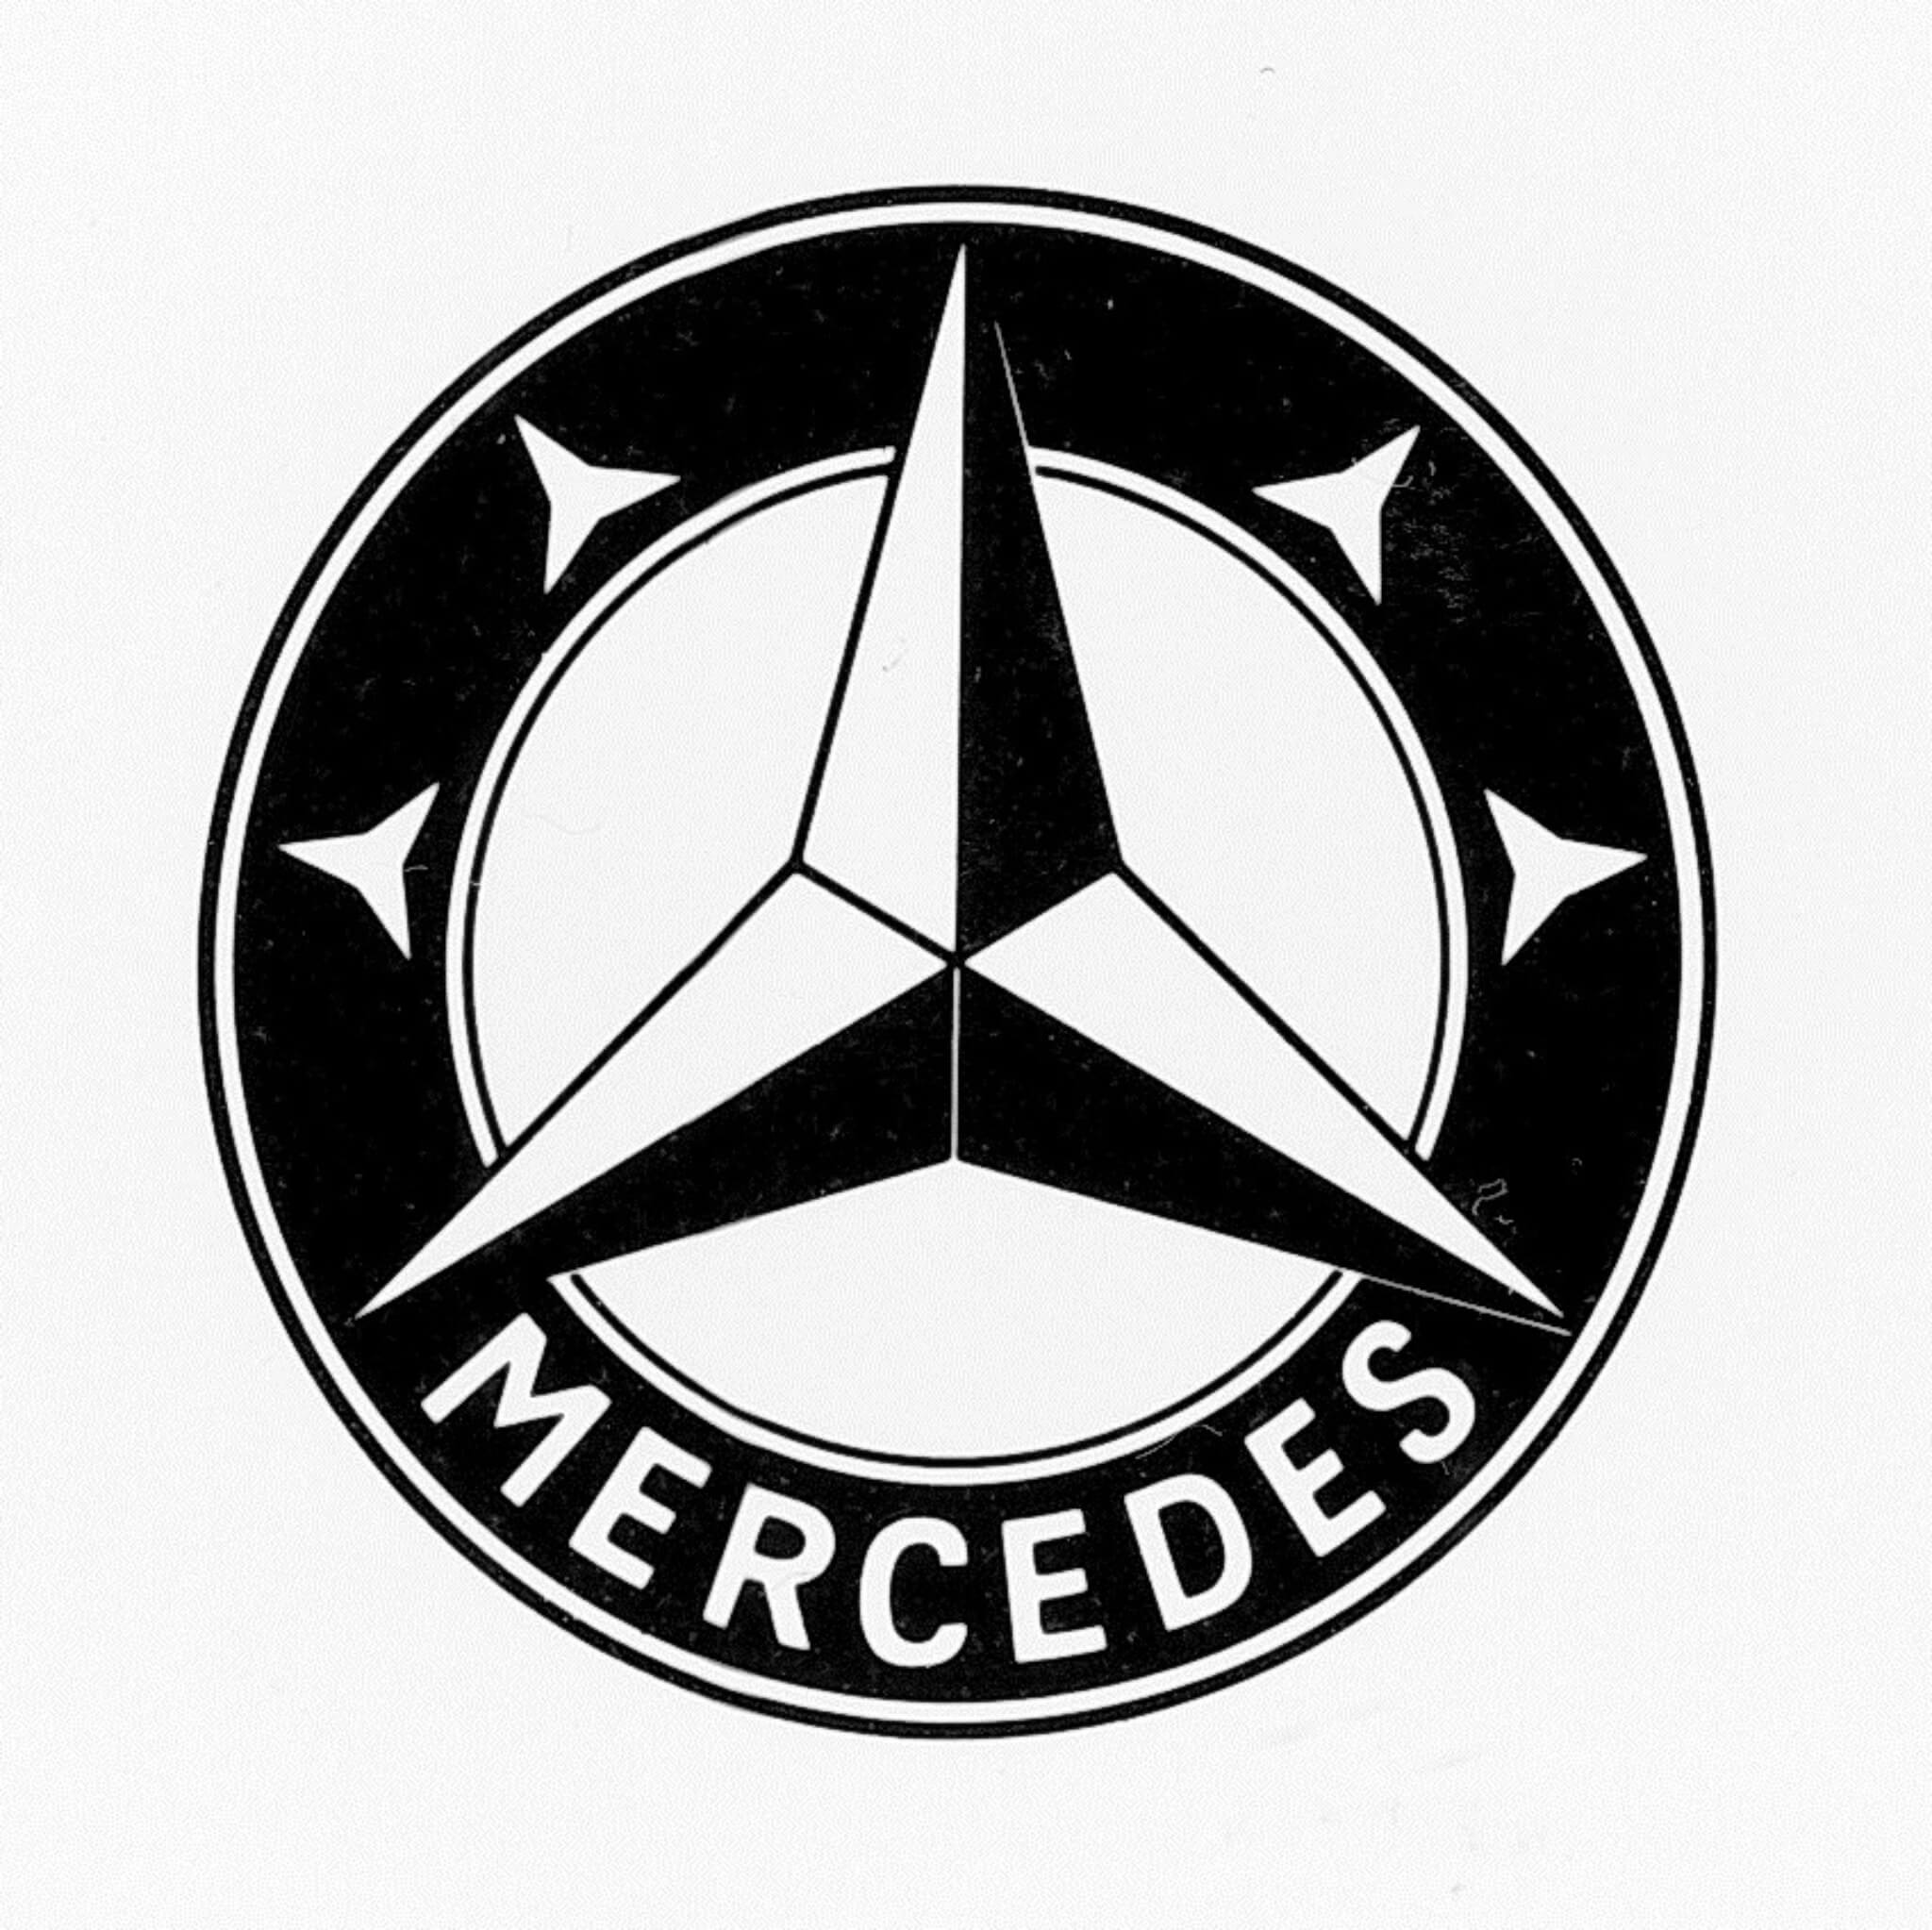 Estrela de três pontas, dentro de um anel, com quatro estrelas mais pequenas dentre deste, duas de cada lado. E ainda a inscrição Mercedes no anel